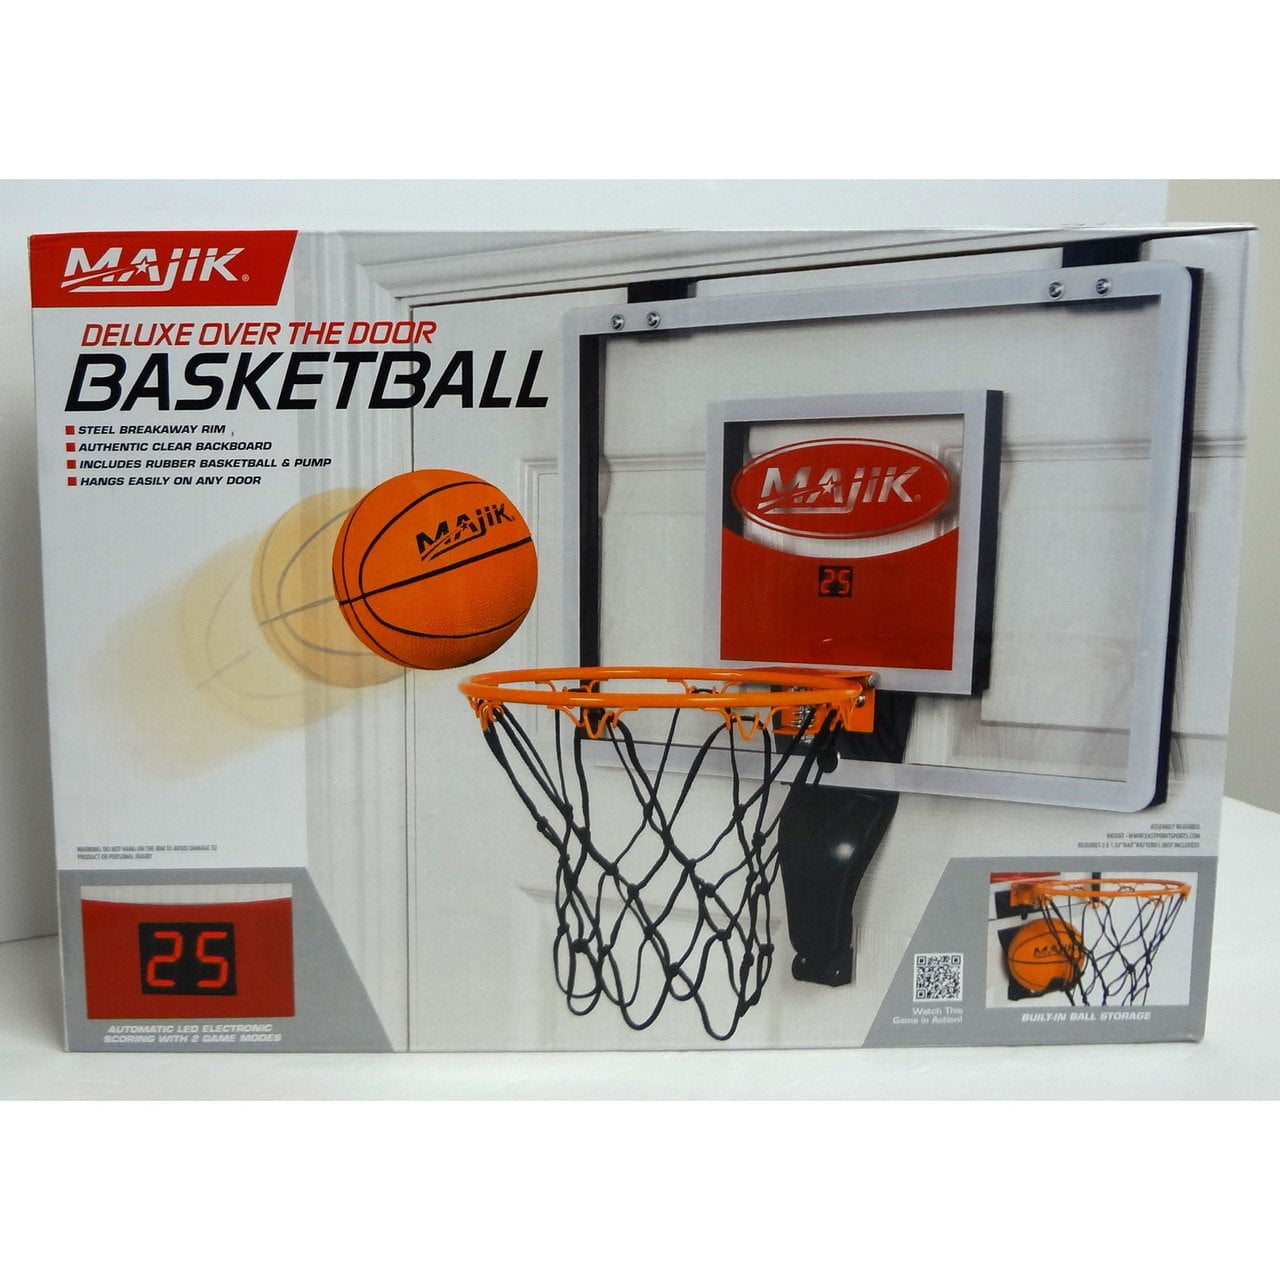 New Basketball with Electronic Scoring Majik Deluxe Over The Door Hoop 